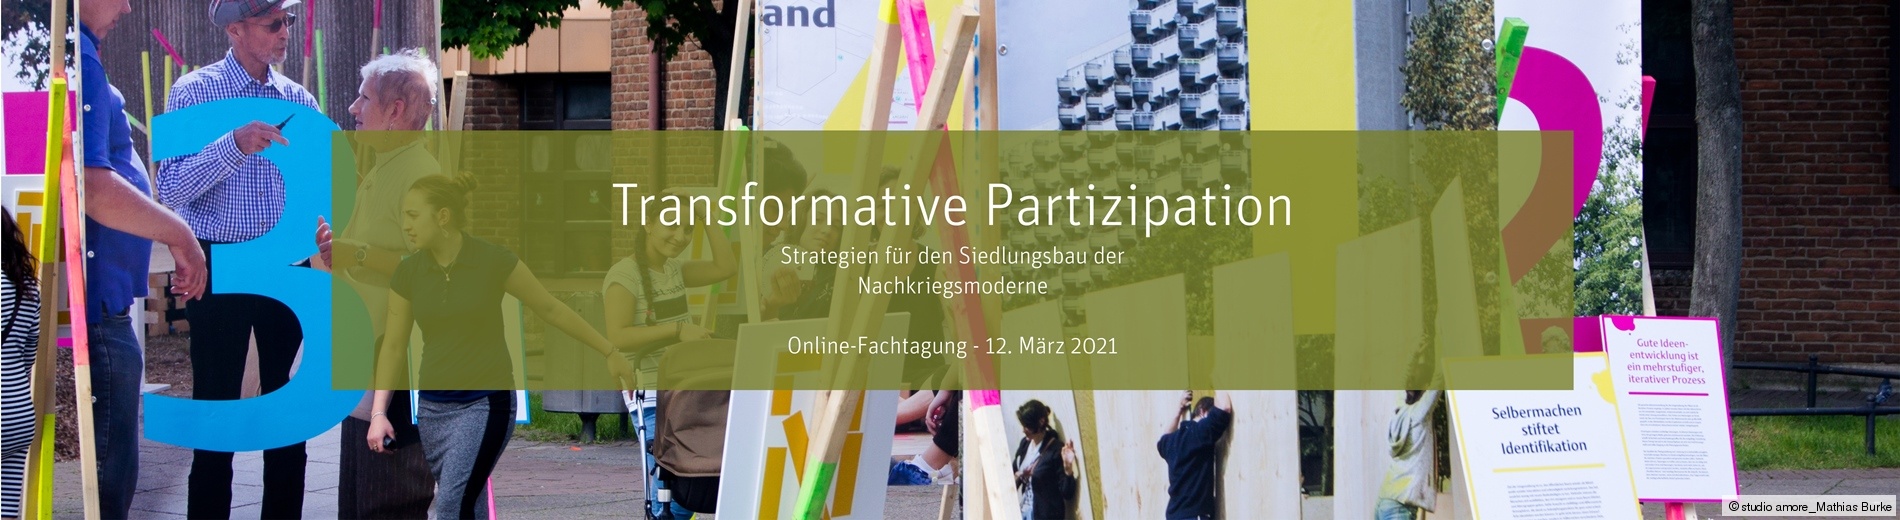 Banner zur Online-Fachtagung Transformative Partizipation